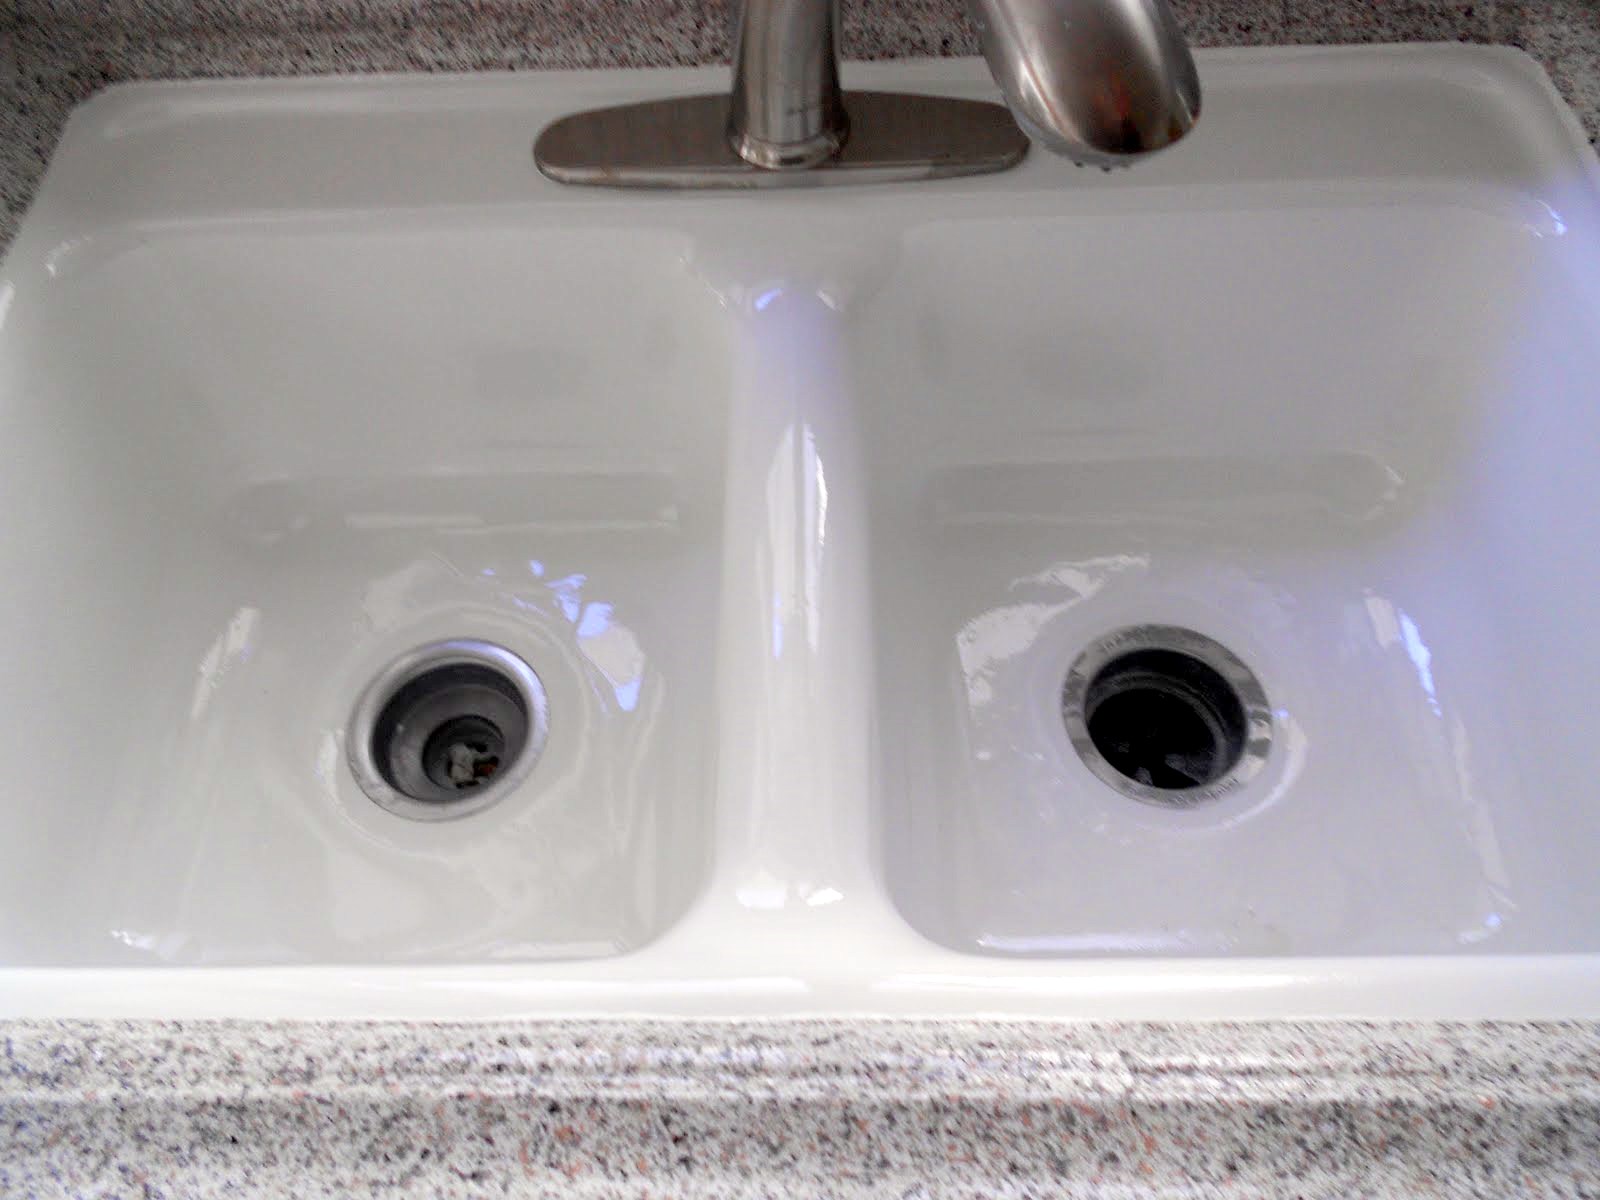 refinish a kitchen sink